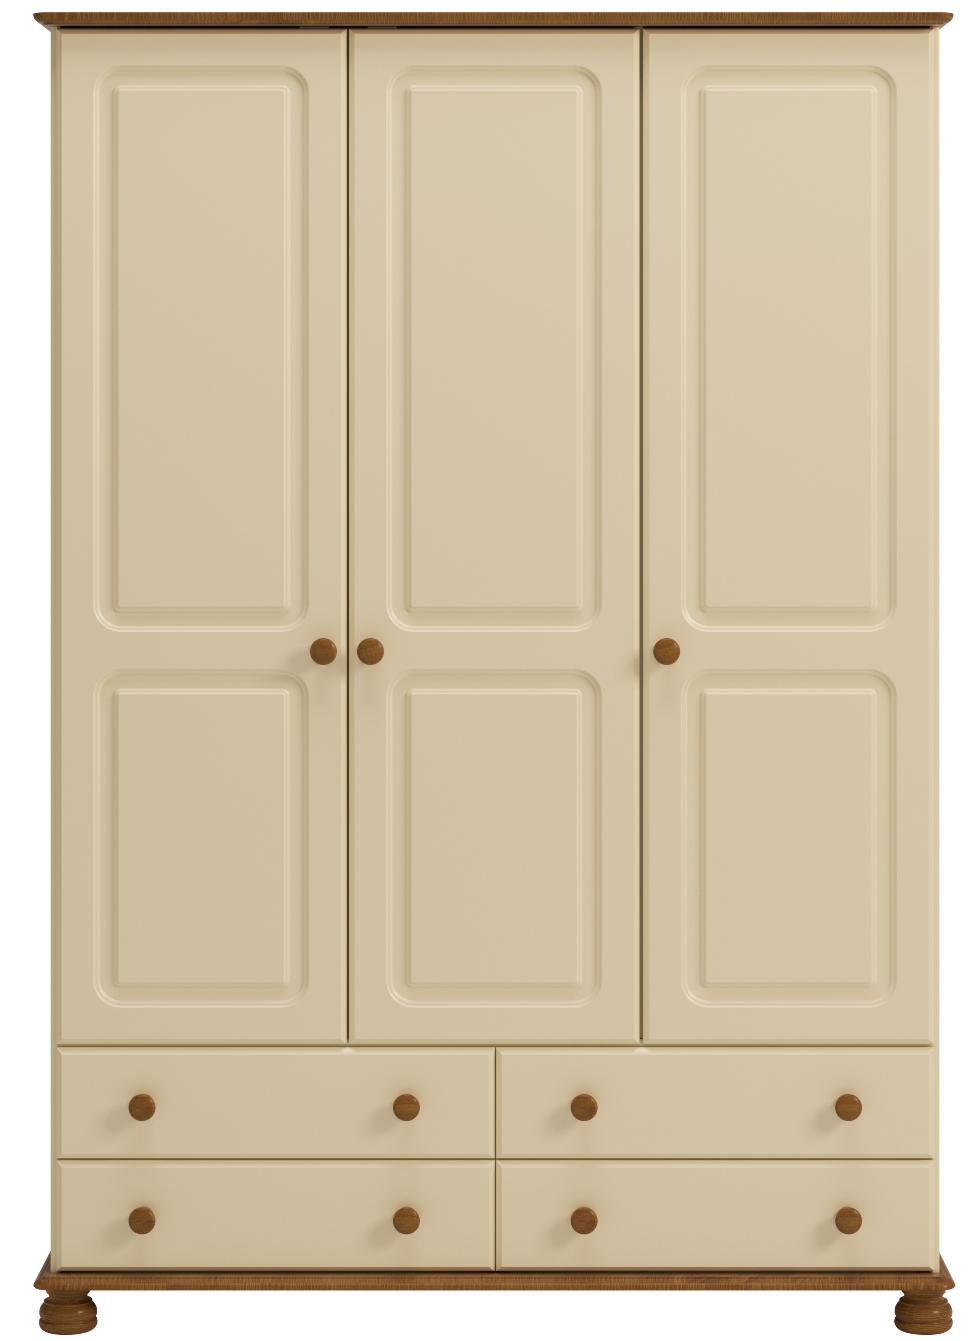 Billede af Royal klædeskab 130 cm cream farvet med 3 døre og 4 skuffer.